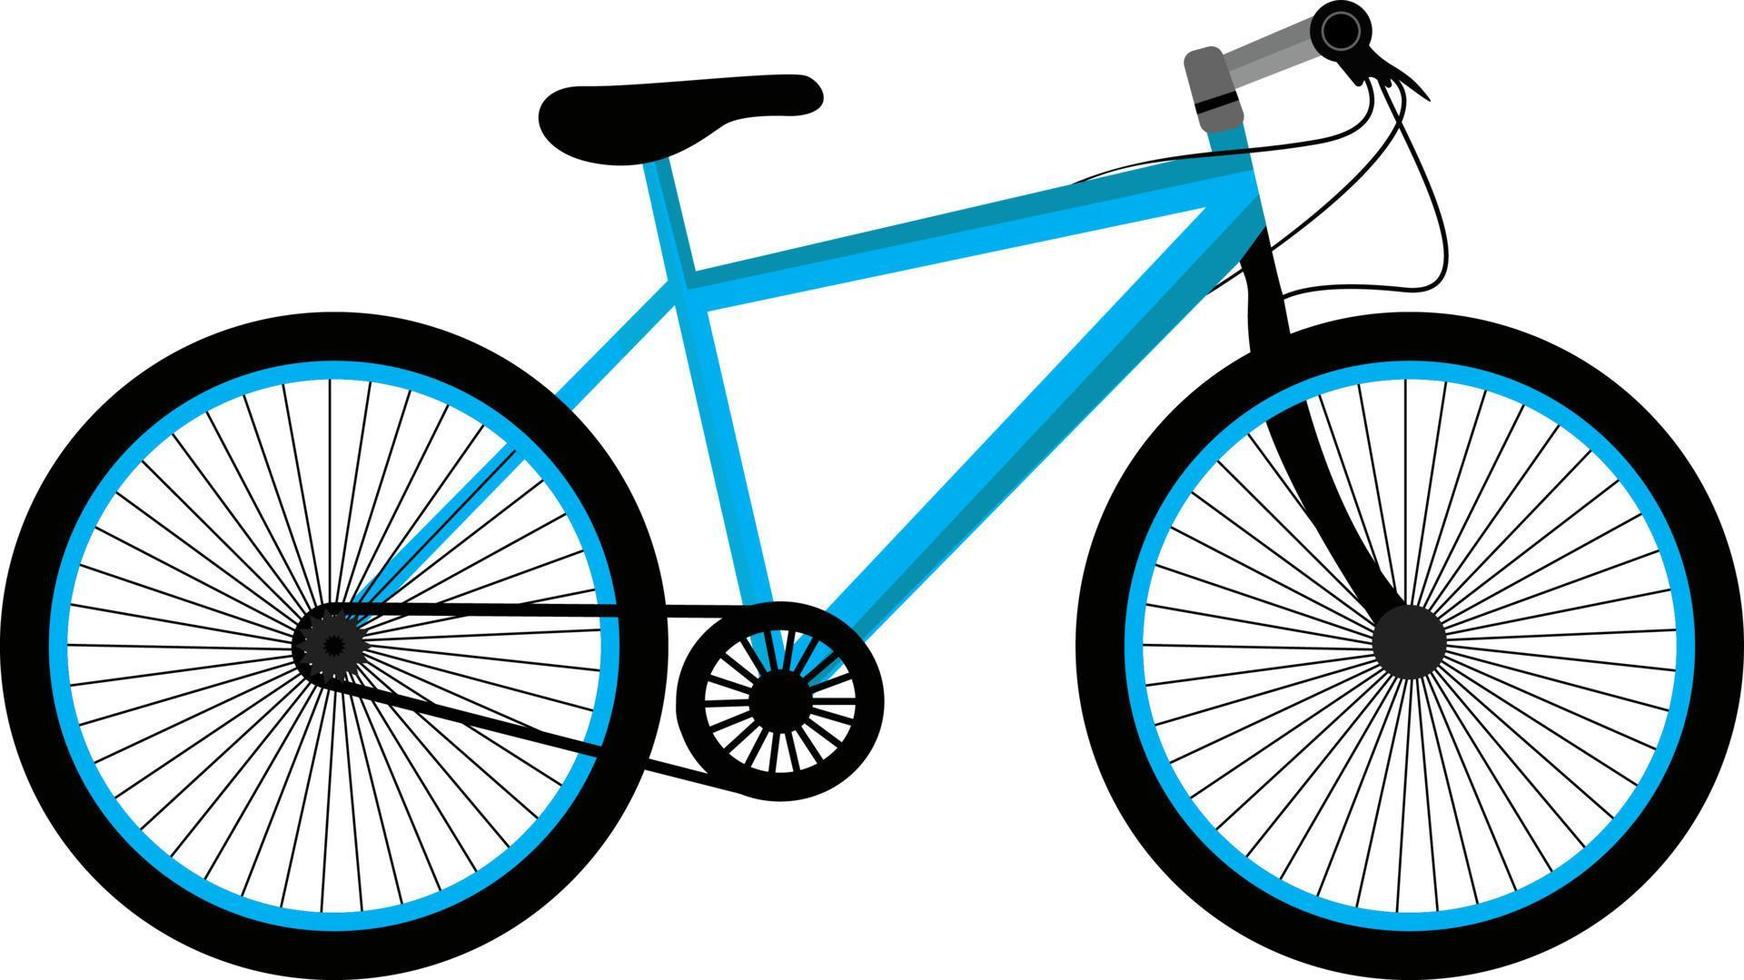 bicicleta pequena, ilustração, vetor em fundo branco.